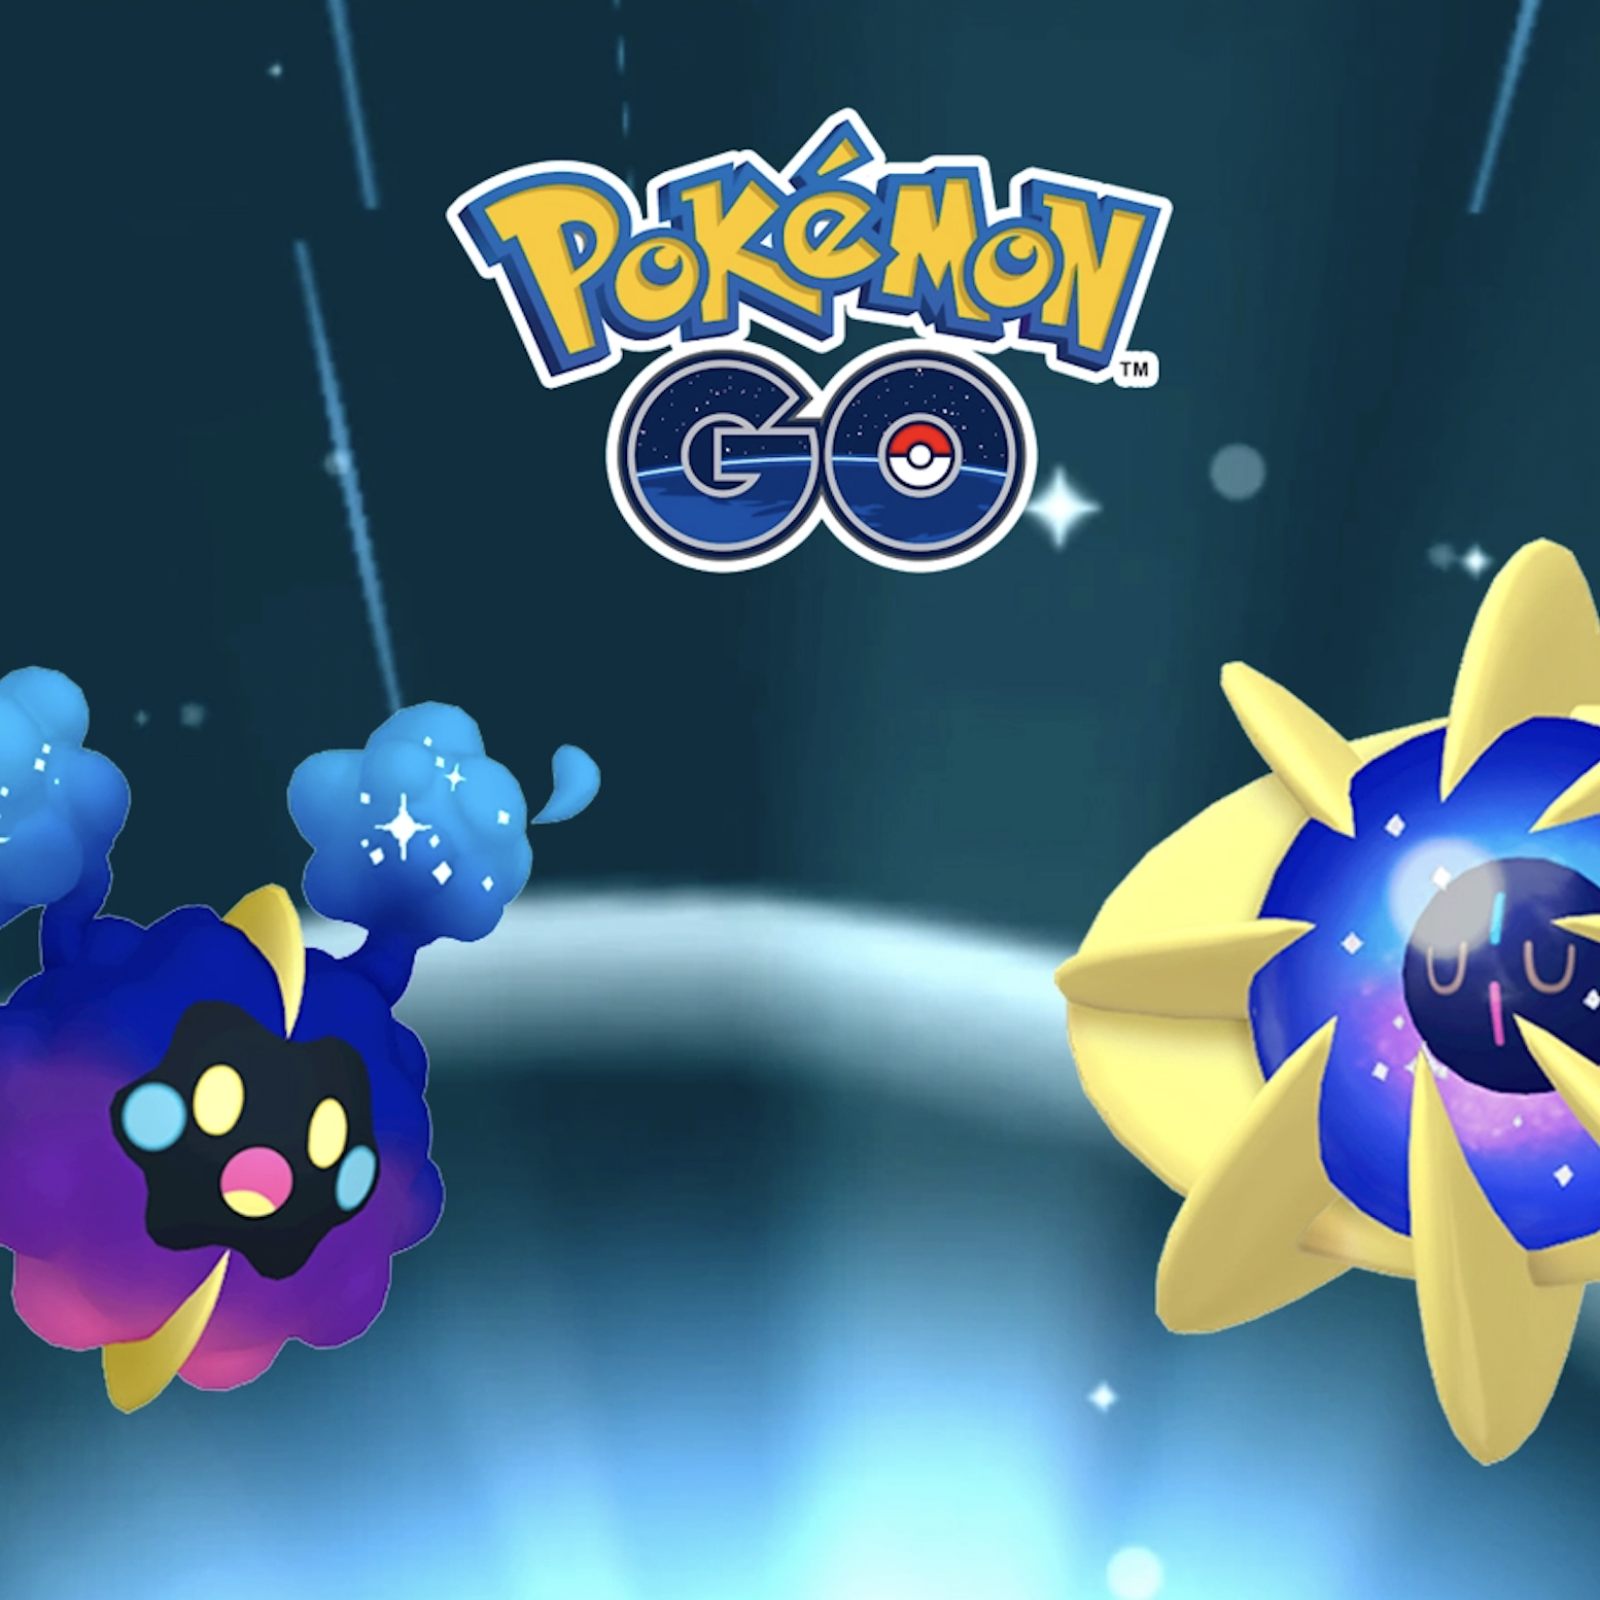 Pokemon Go: How to evolve Cosmog into Cosmoem - Dexerto